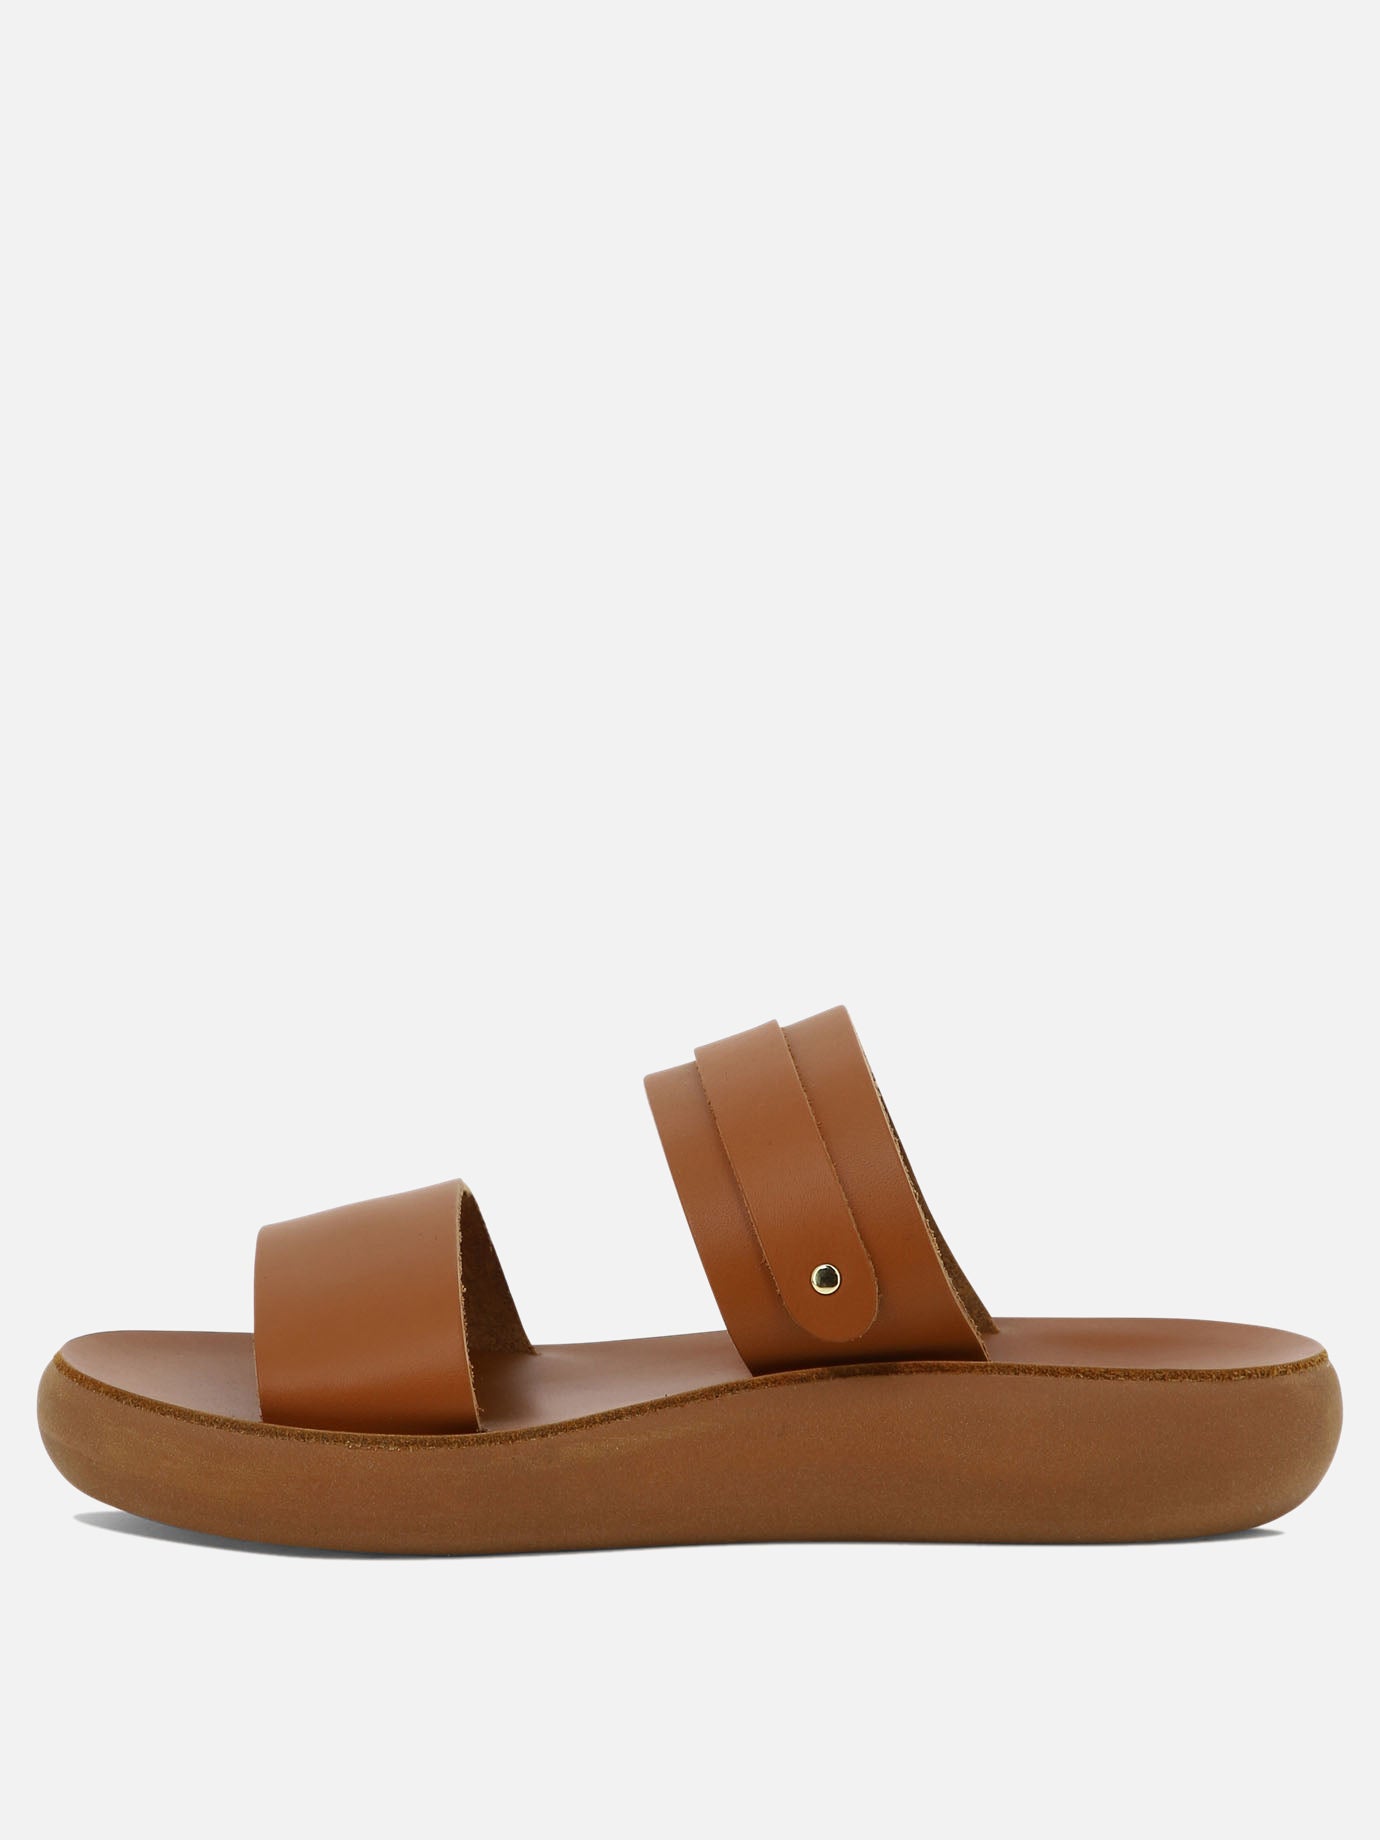 "Preveza Comfort" sandals